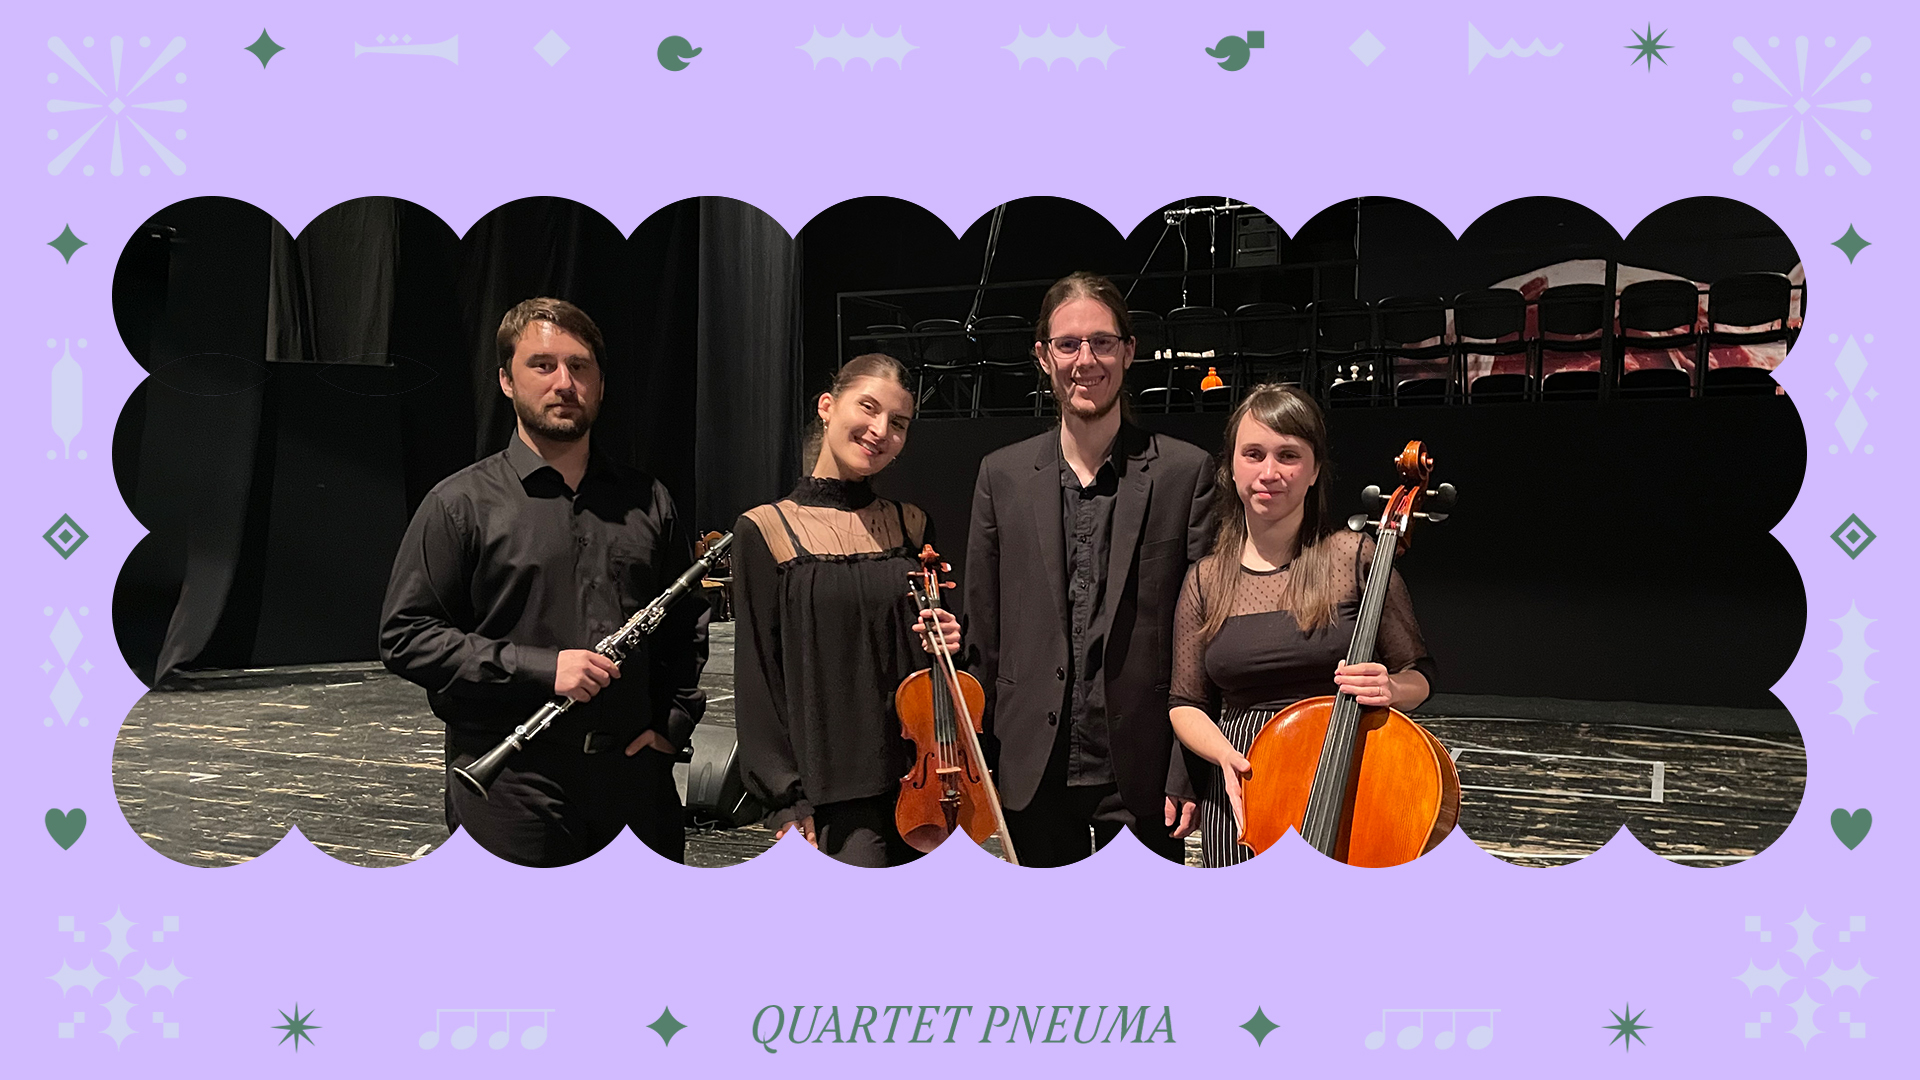 Quartet Pneuma